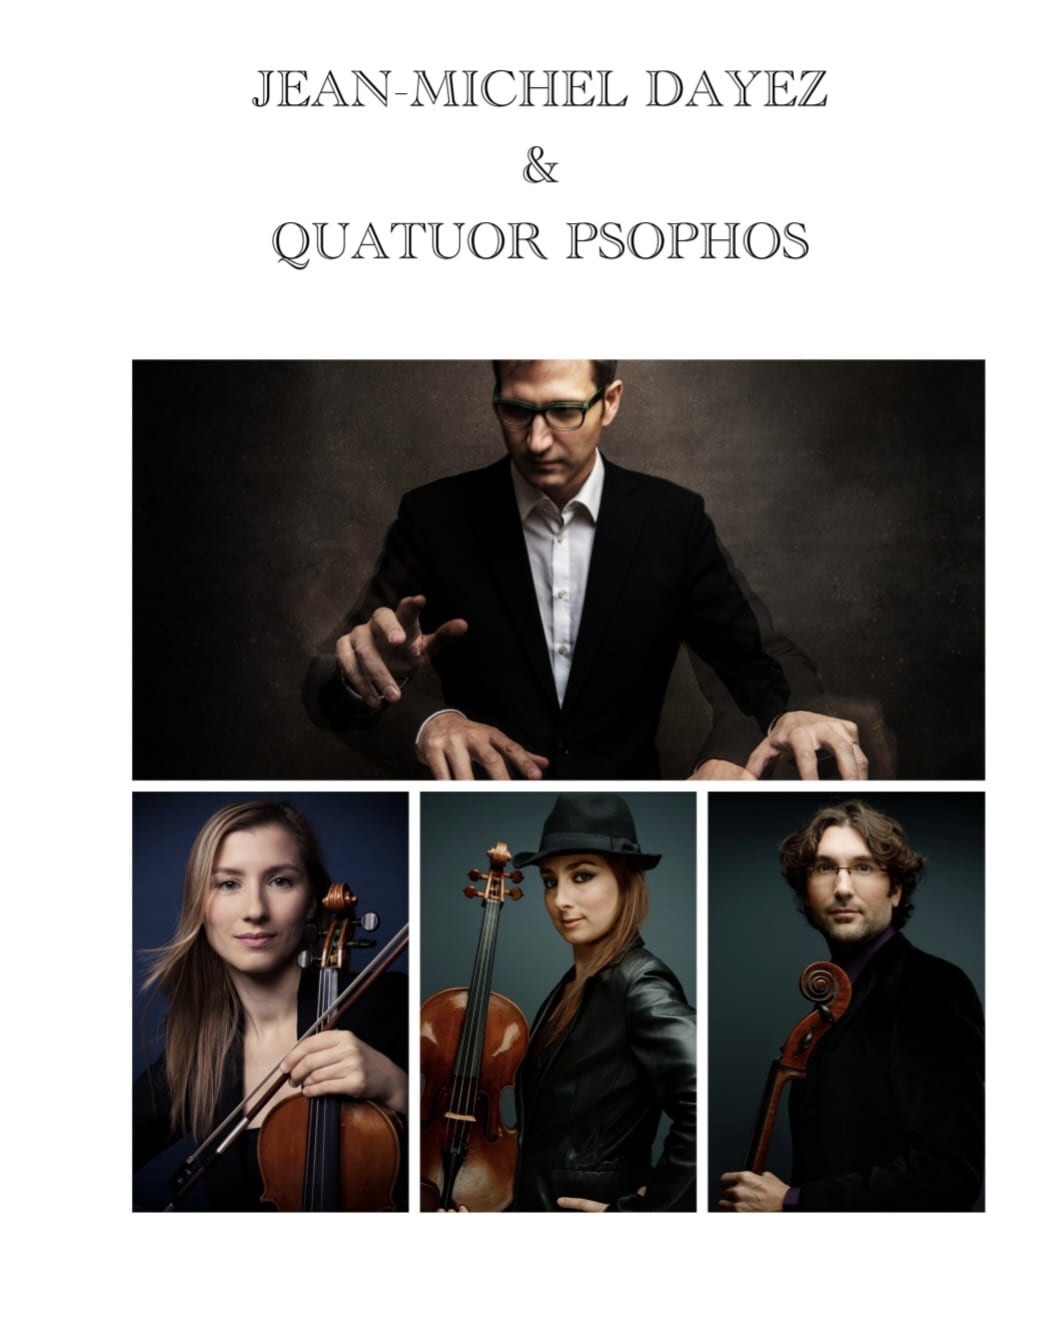 Quatuor psophos 